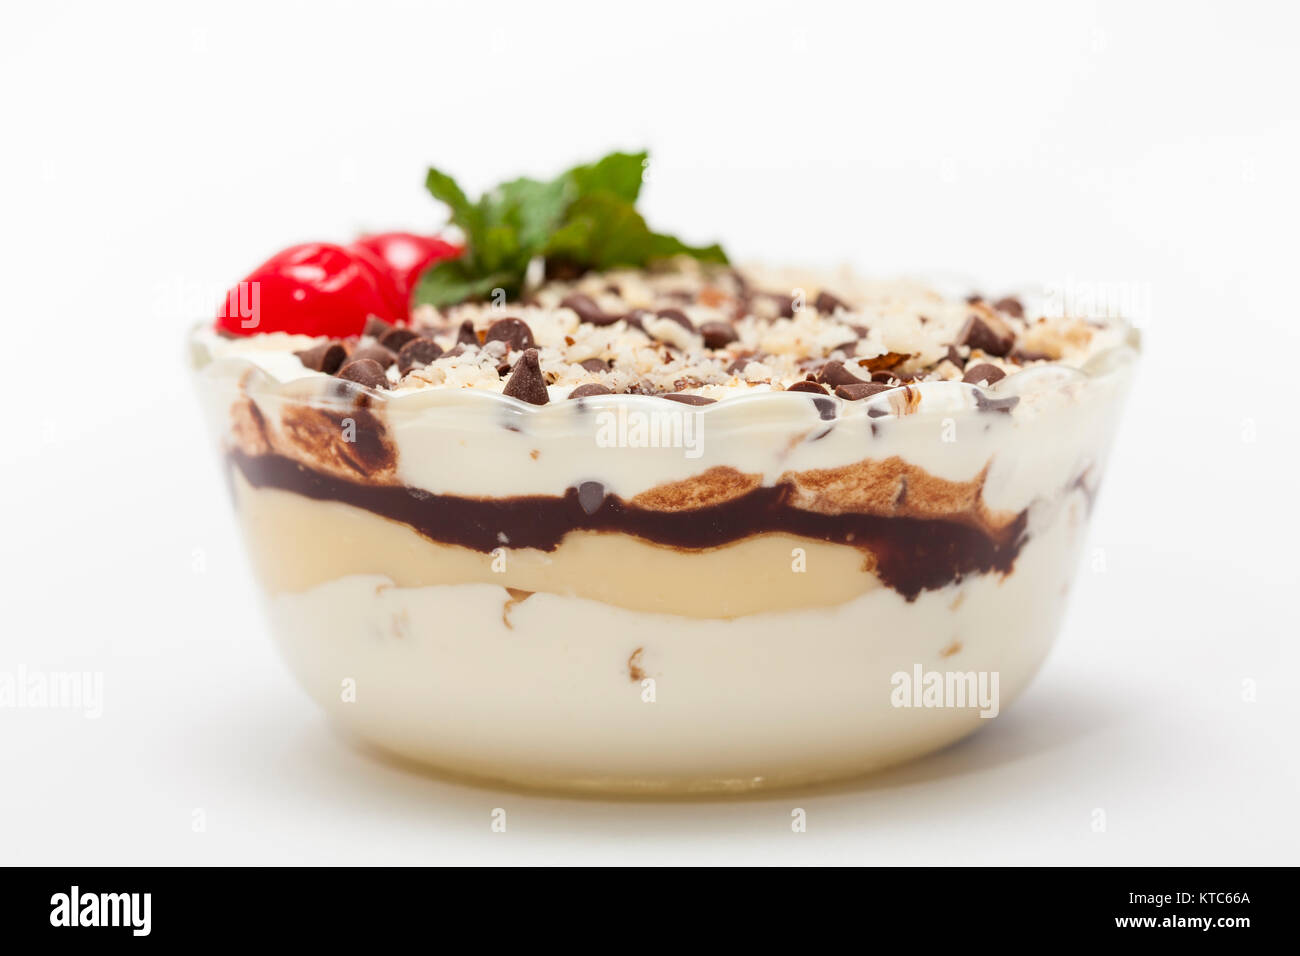 Dekoriert Napoleon Dessert in einem transparenten Schüssel Stockfoto